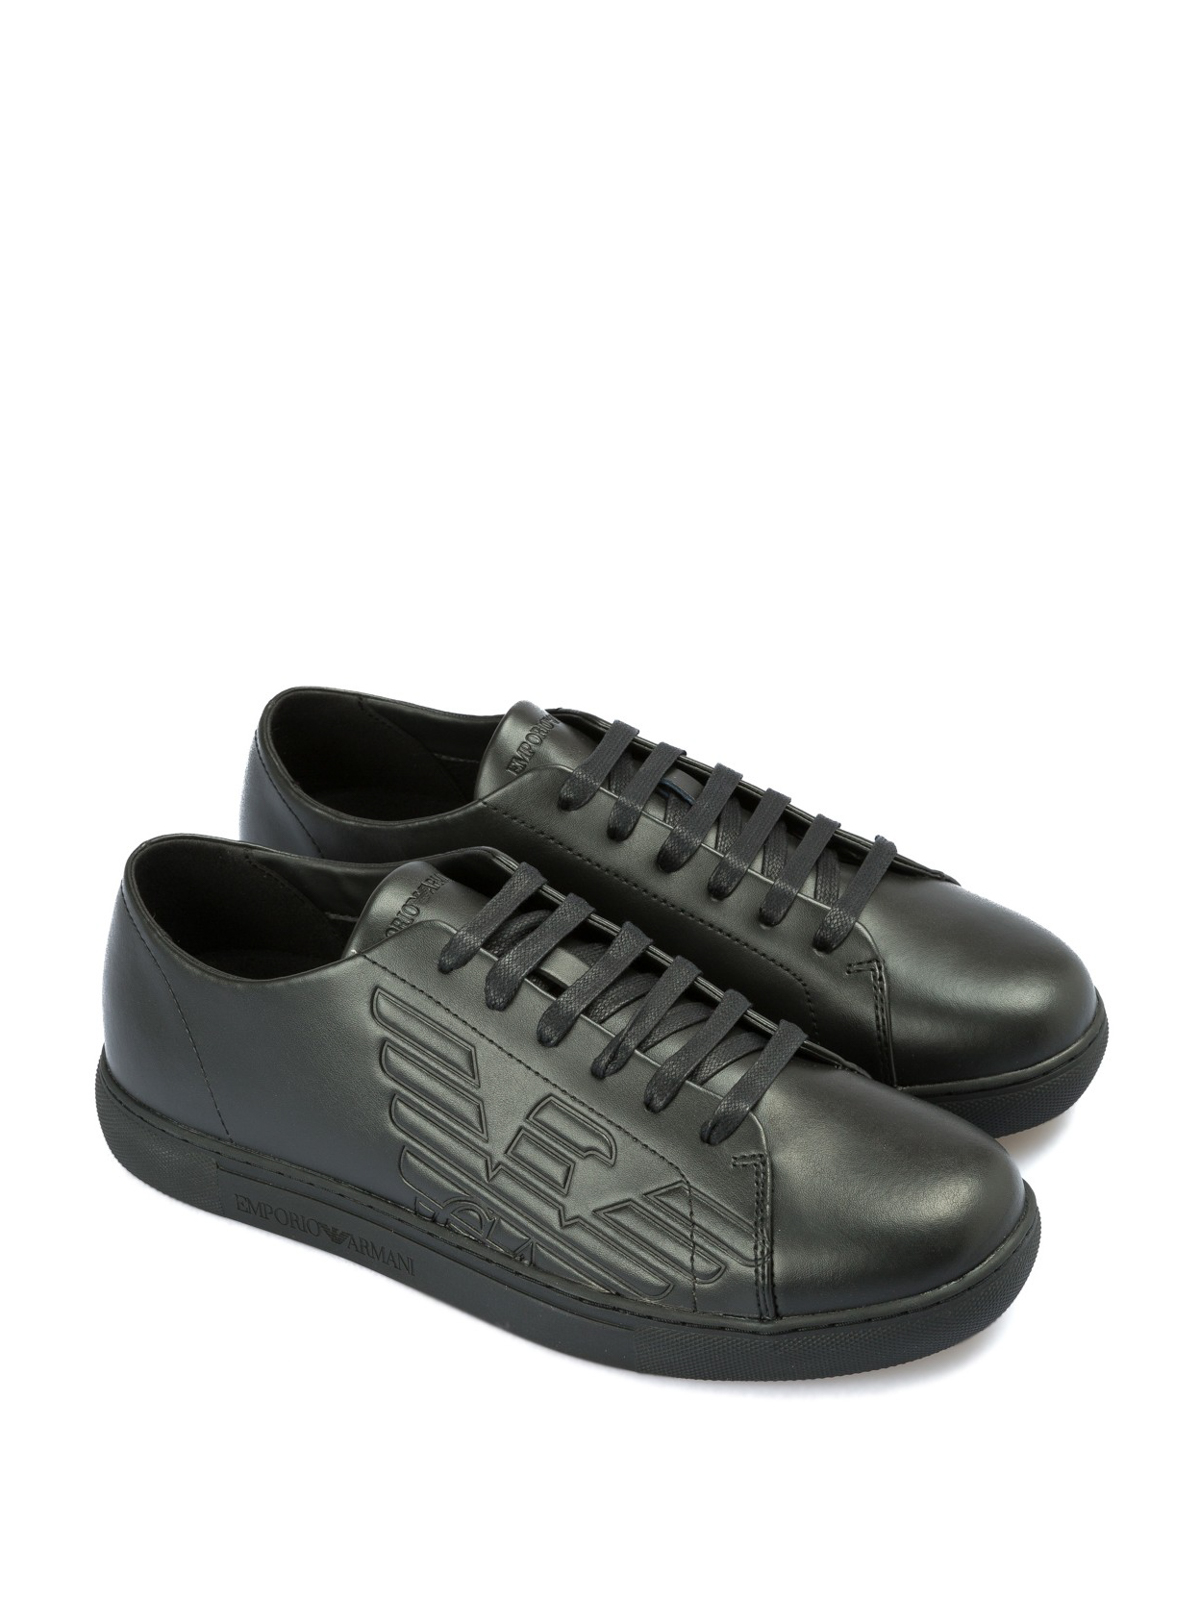 Introducir 52+ imagen emporio armani leather shoes - Abzlocal.mx